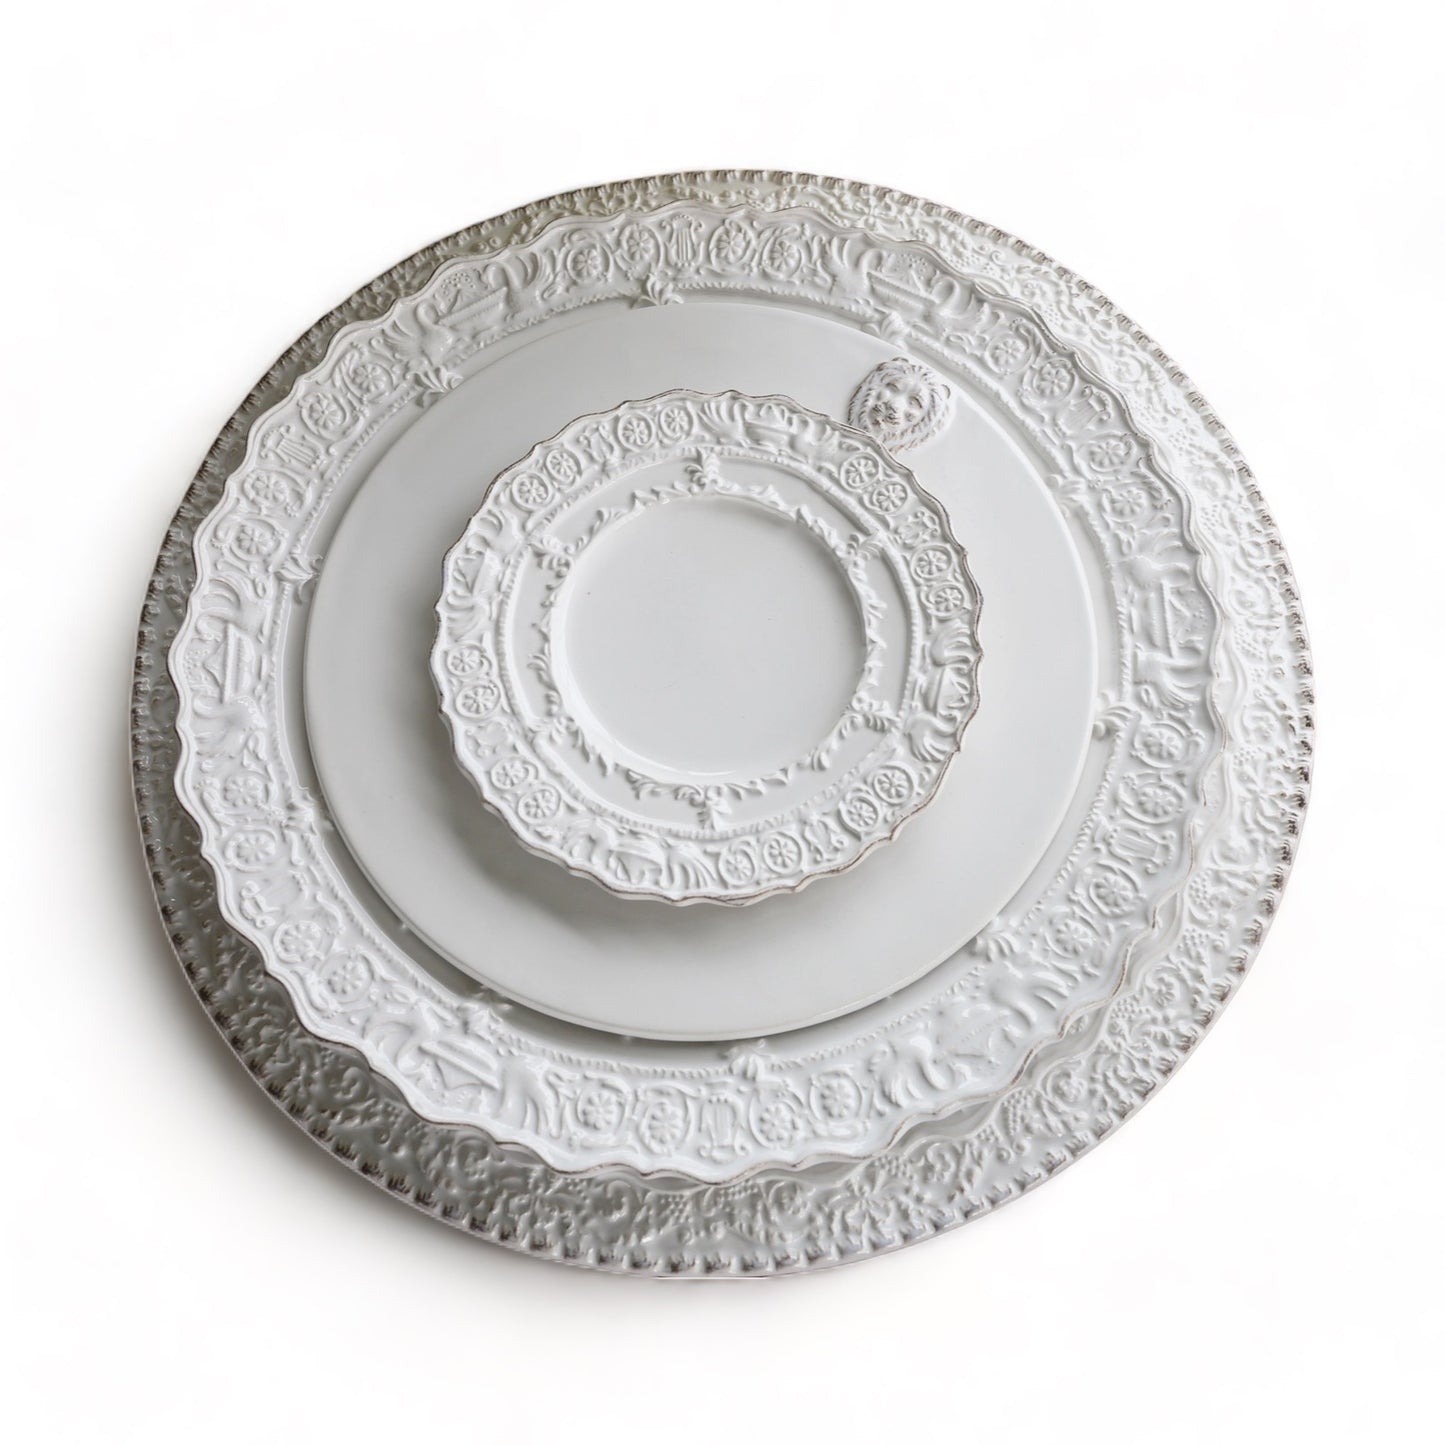 Renaissance Canapé Plate